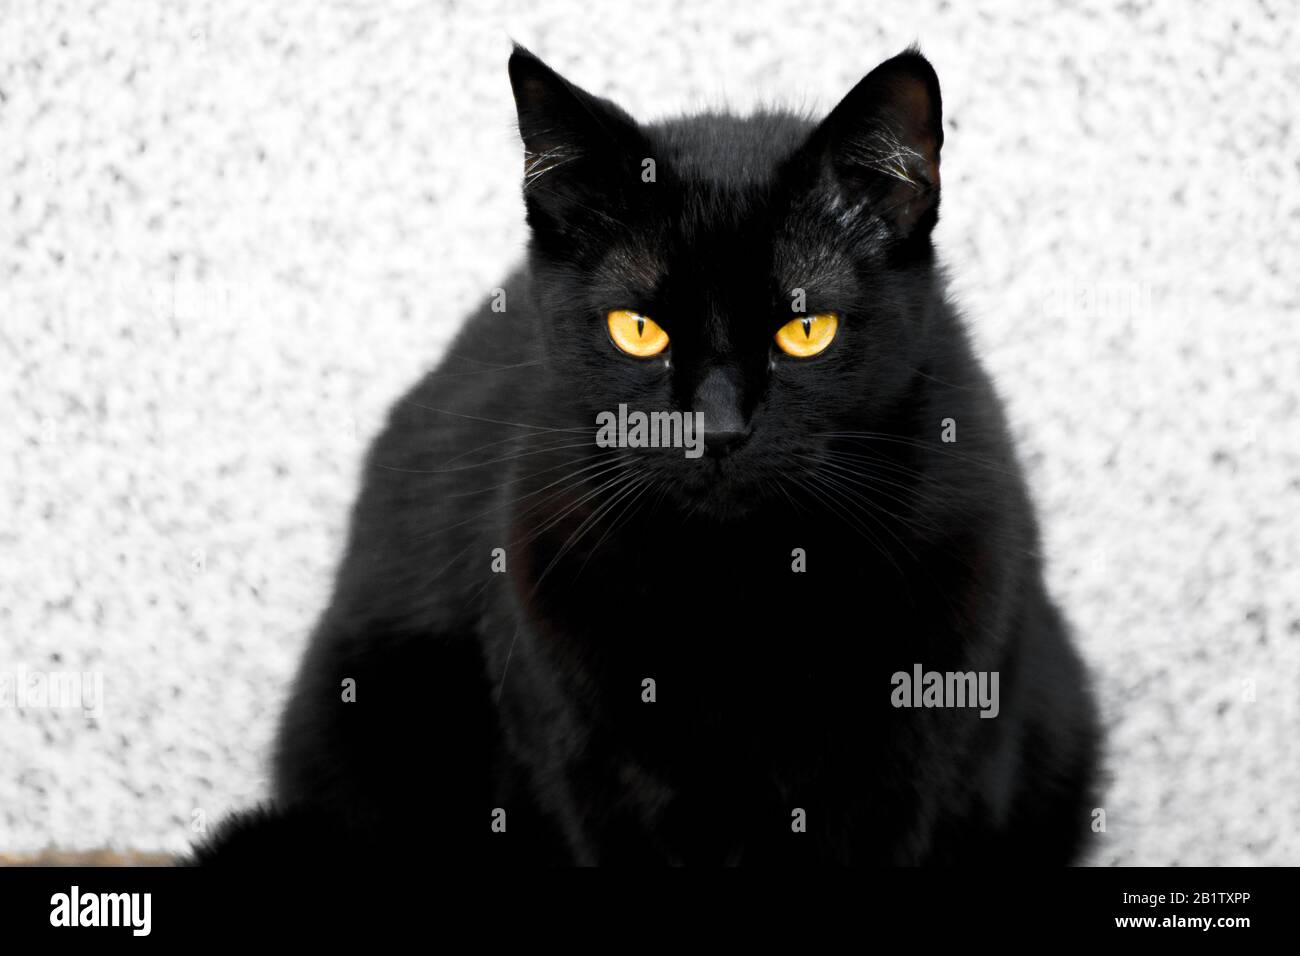 Puss, die schöne, hochfotogene schwarze Katze mit wunderschönen, hypnotisierenden Augen und seidig glattem schwarzem Fell. Stockfoto